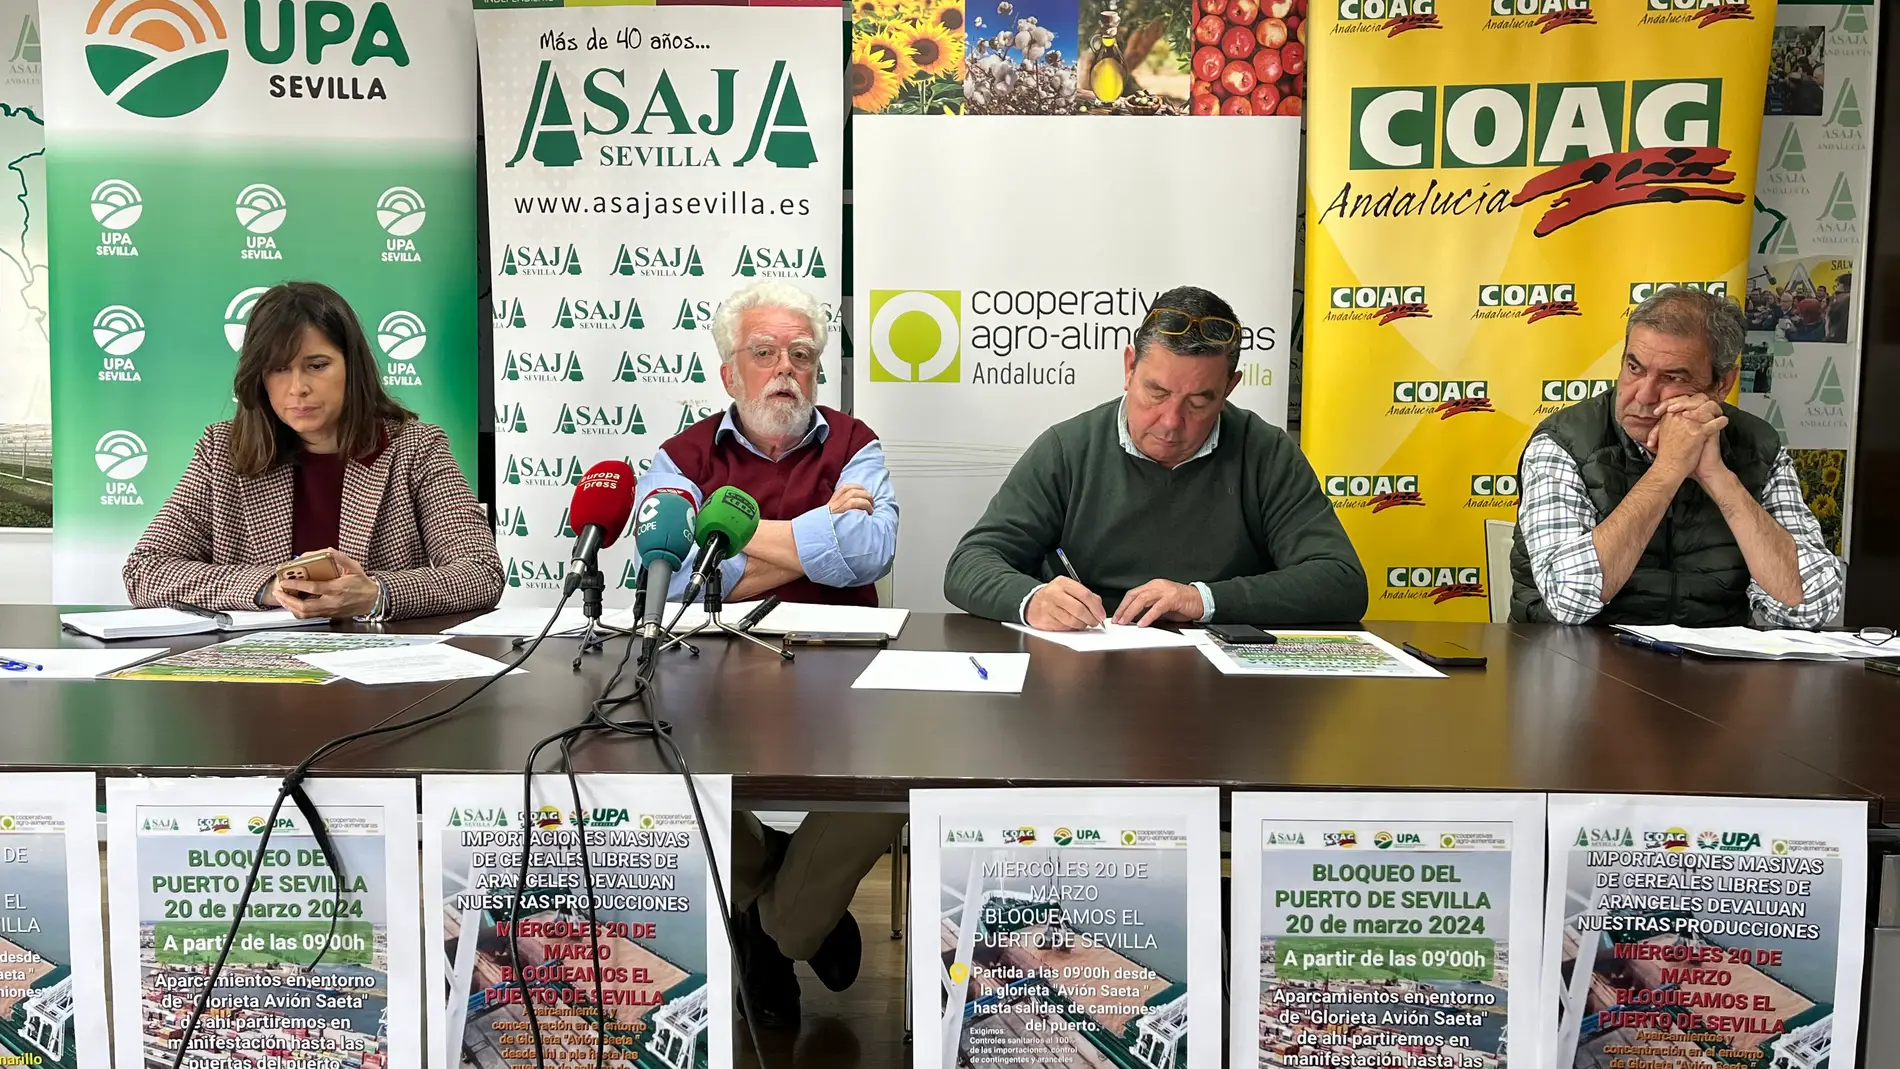 Asaja, Coag, Upa y Cooperativas Agroalimentarias anuncian la movilización del miércoles 20